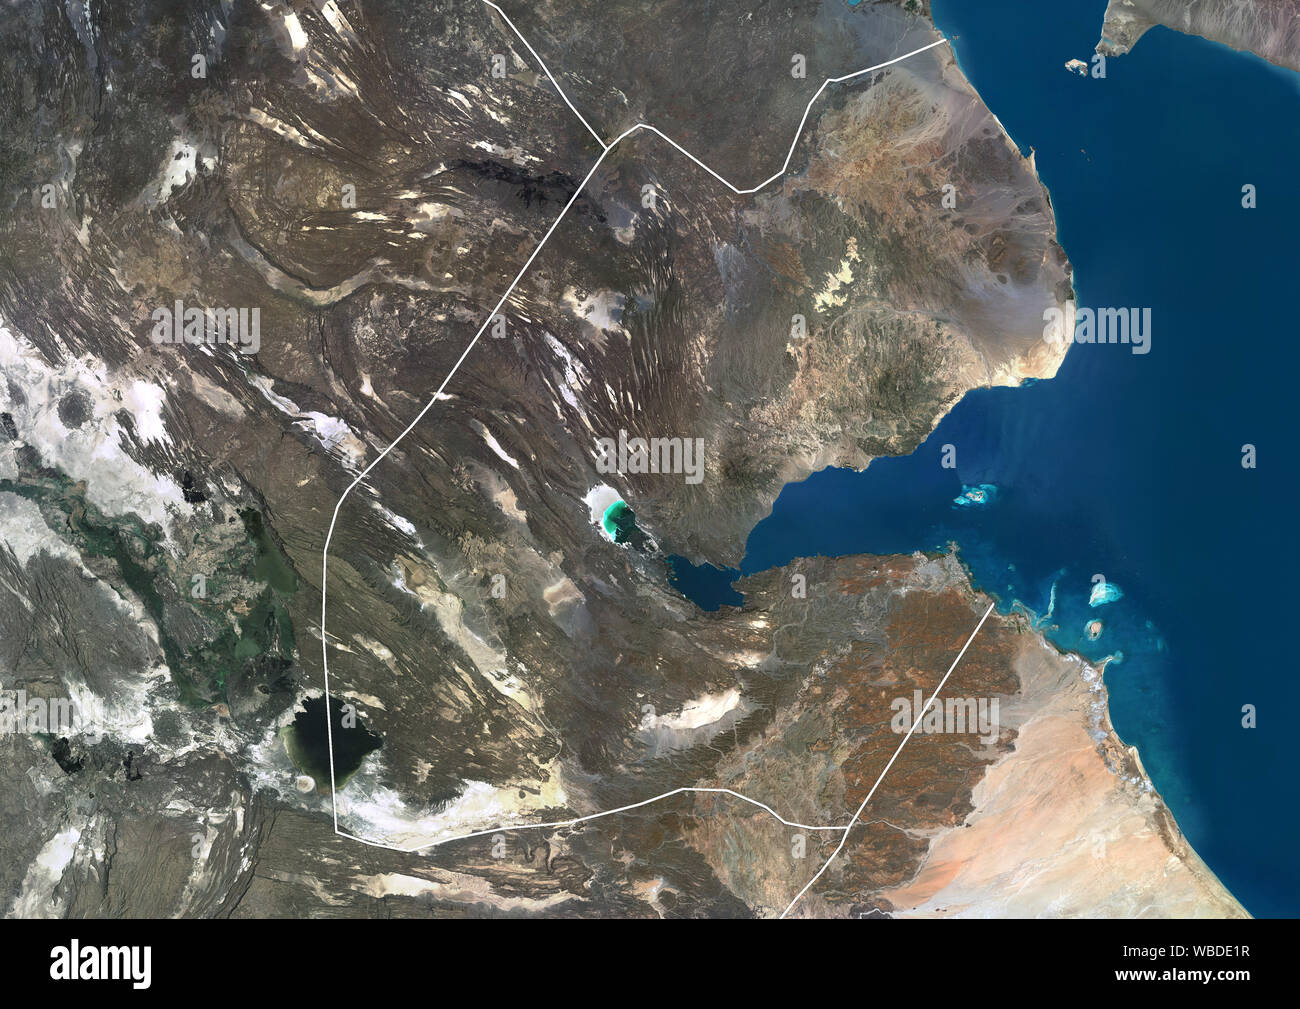 Imagen de satélite de color de Djibouti (con los límites administrativos), país situado en el Cuerno de África. Esta imagen fue compilado a partir de datos adquiridos por Sentinel-2 y Landsat 8 satélites. Foto de stock